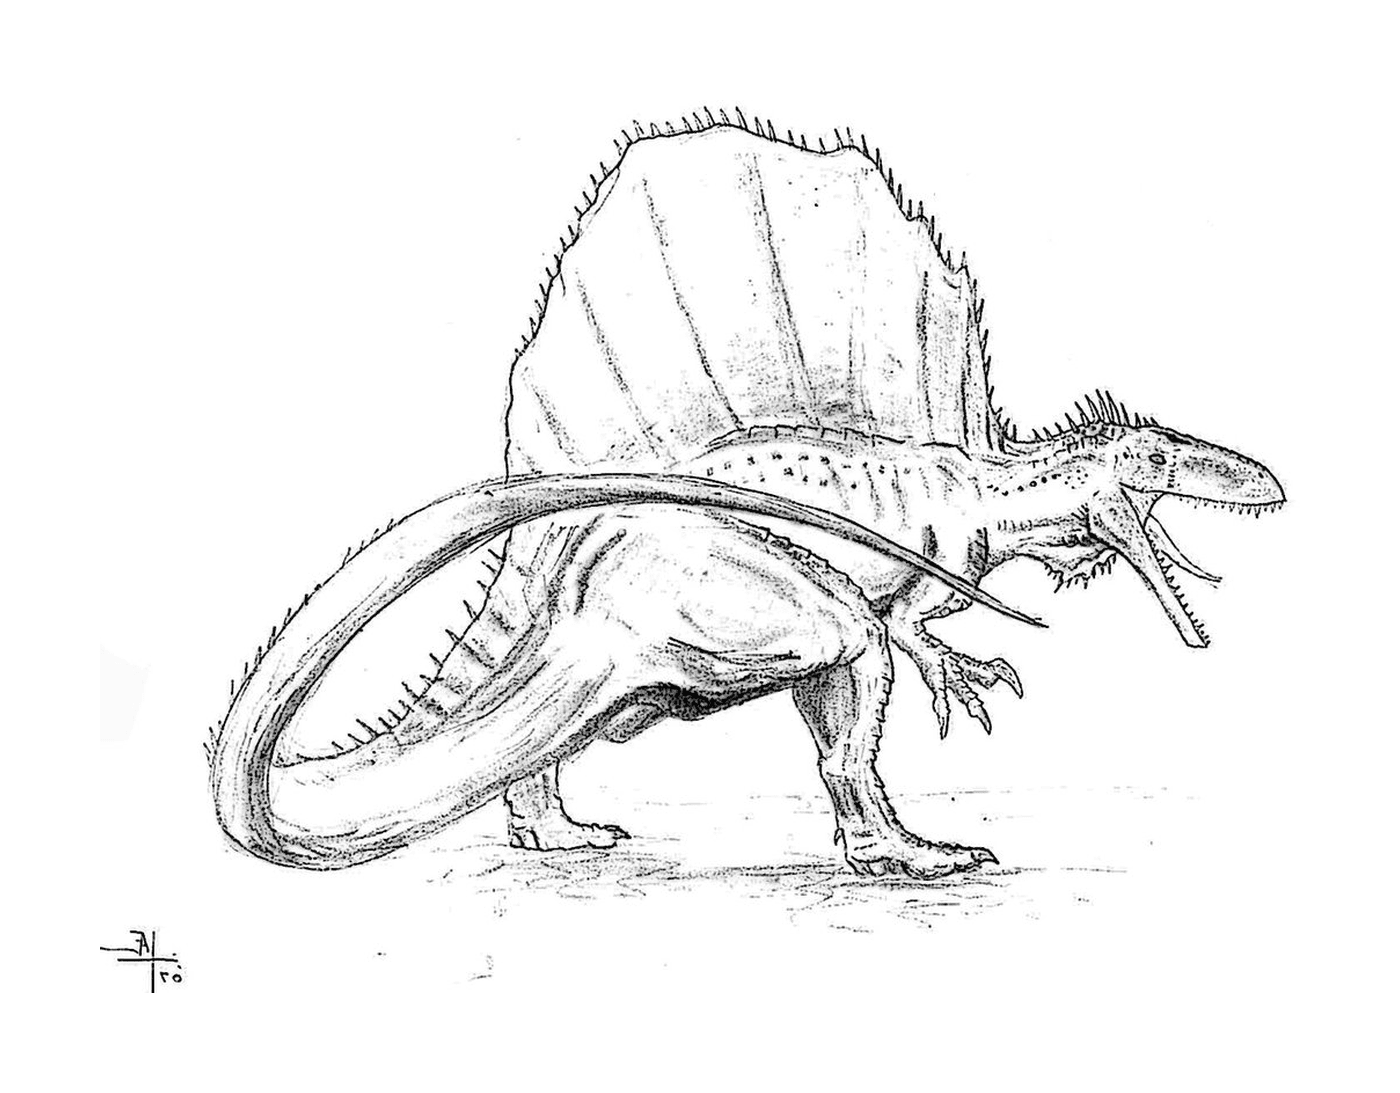  Спинозавр, величественный динозавр 